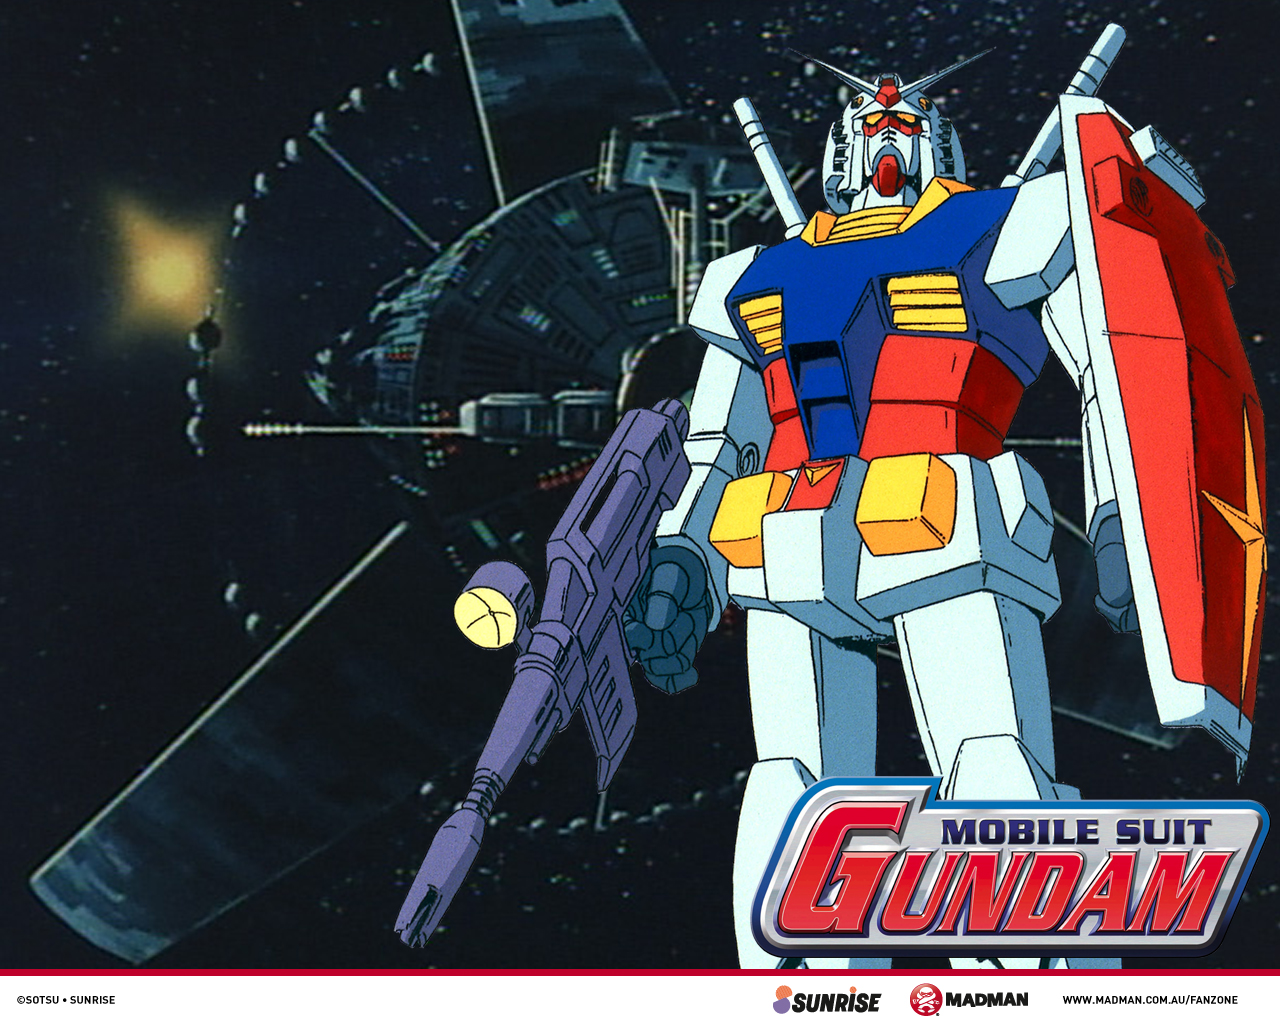 2. Mobile Suit Gundam